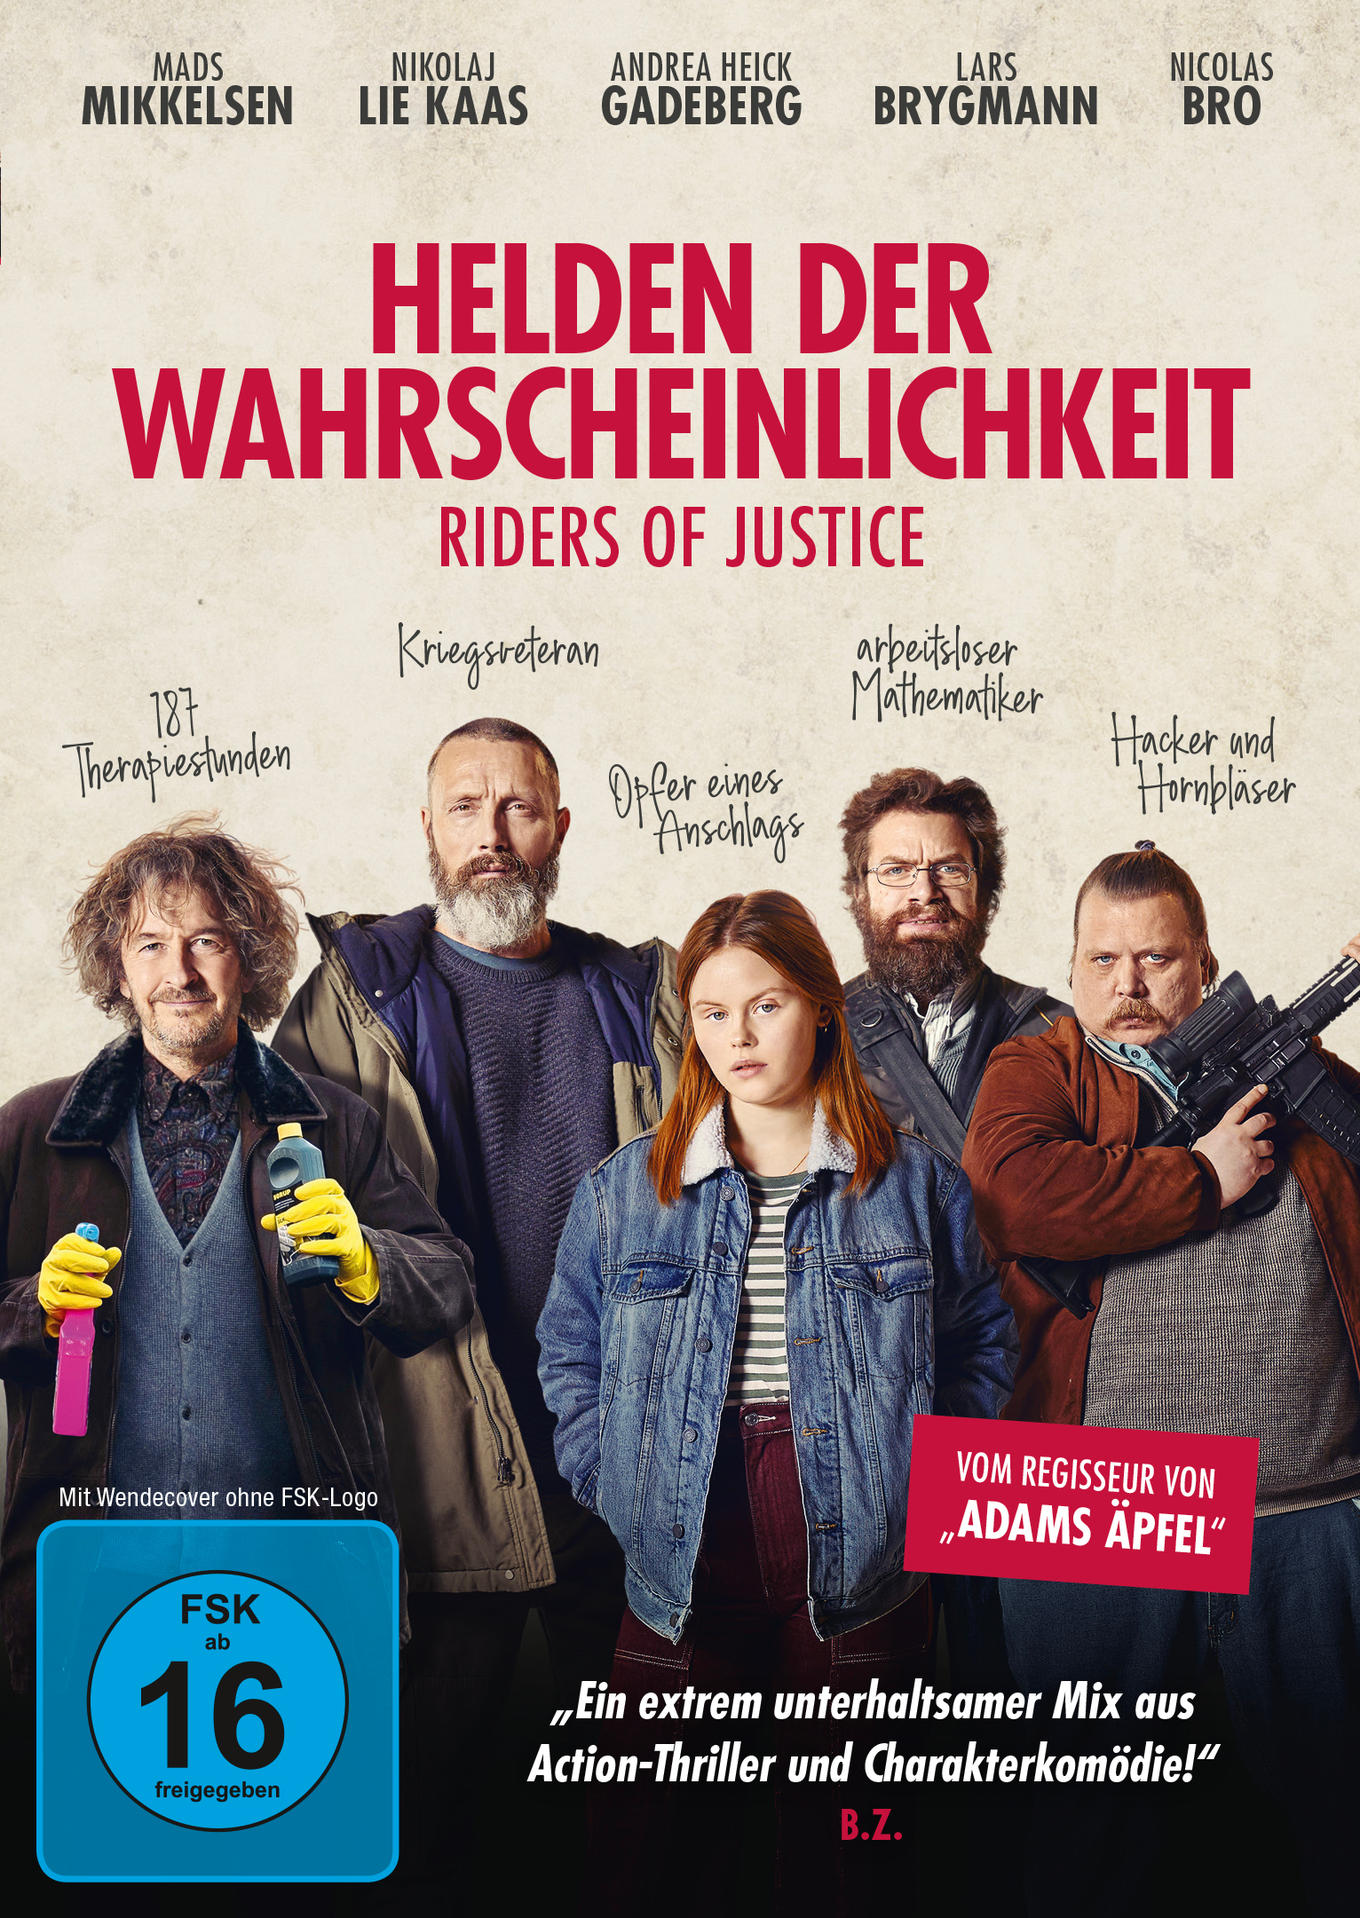 Riders der DVD Wahrscheinlichkeit of - Helden Justice